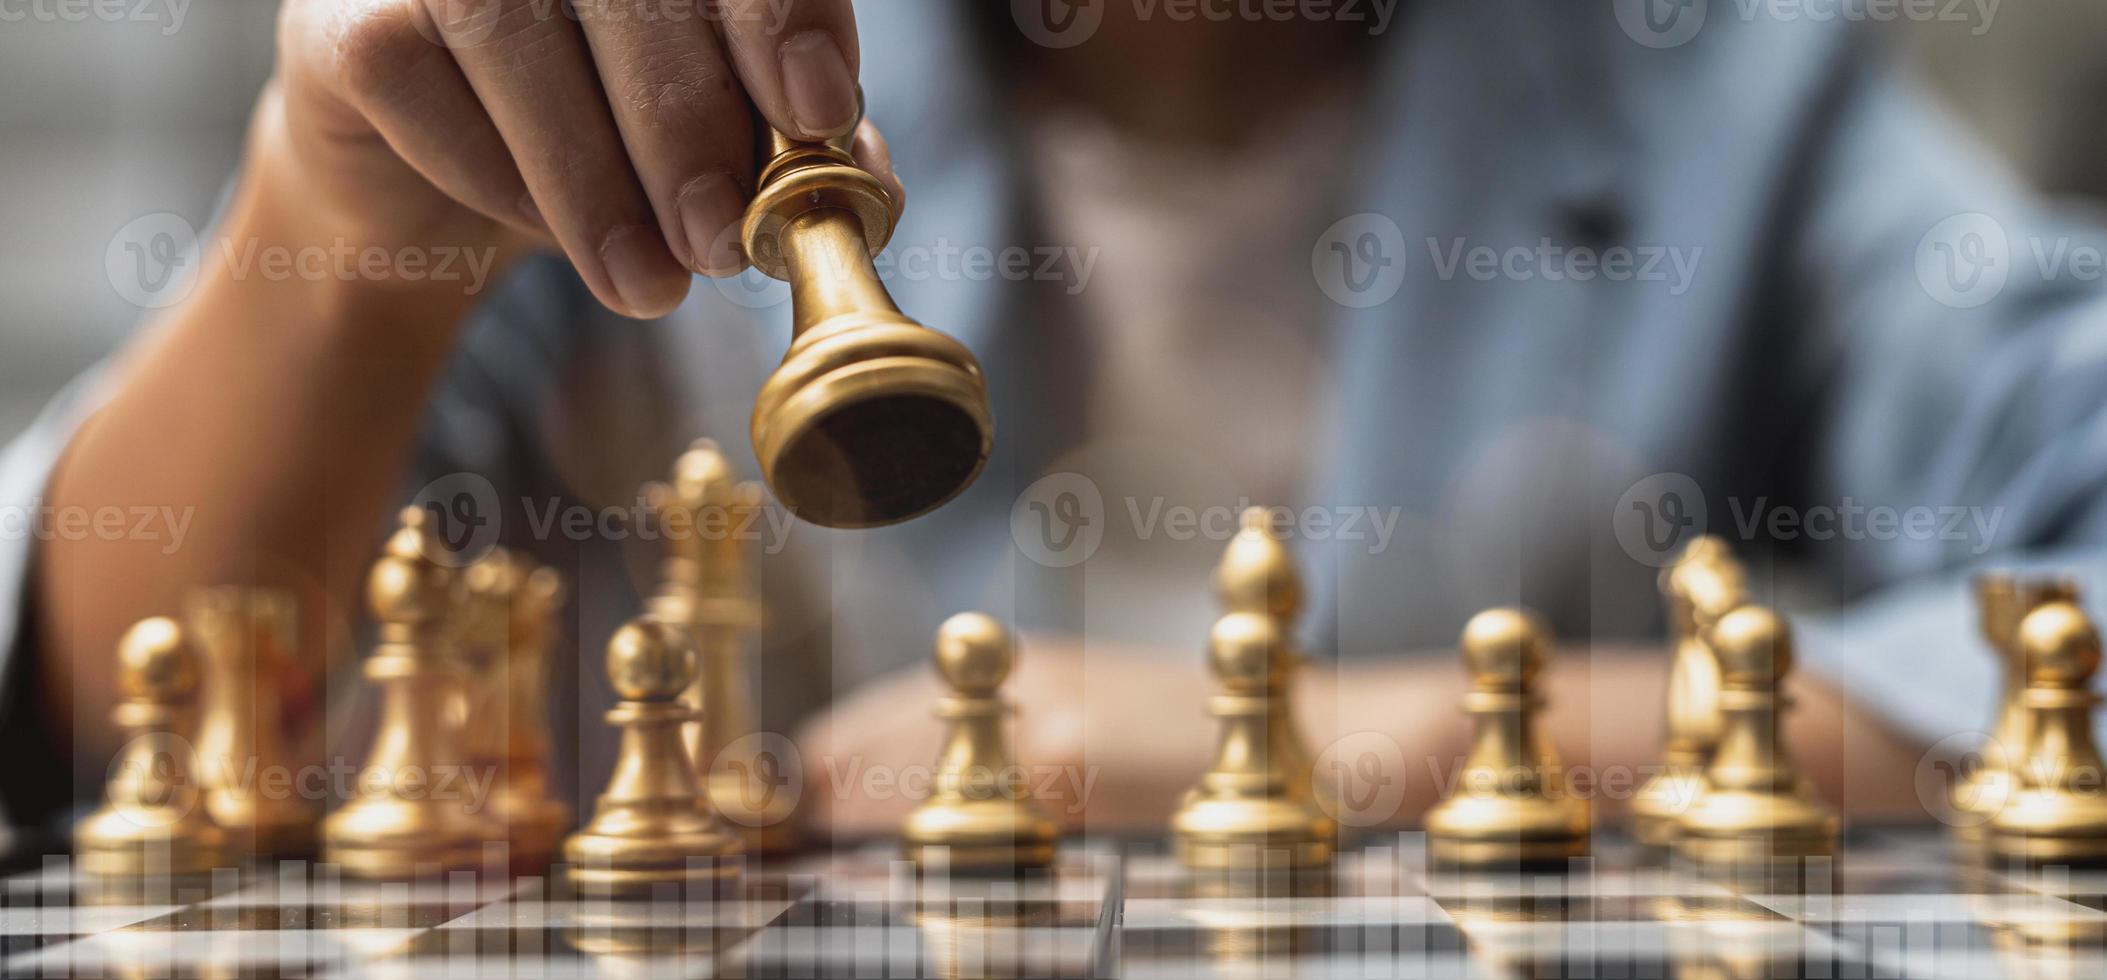 person som håller gyllene schackpjäser för att köra ett spel, konceptuell bild av affärsman som spelar schackbräde jämfört med att hantera ett företag på risk, diagramgrafik som visar finansiella flöden. foto